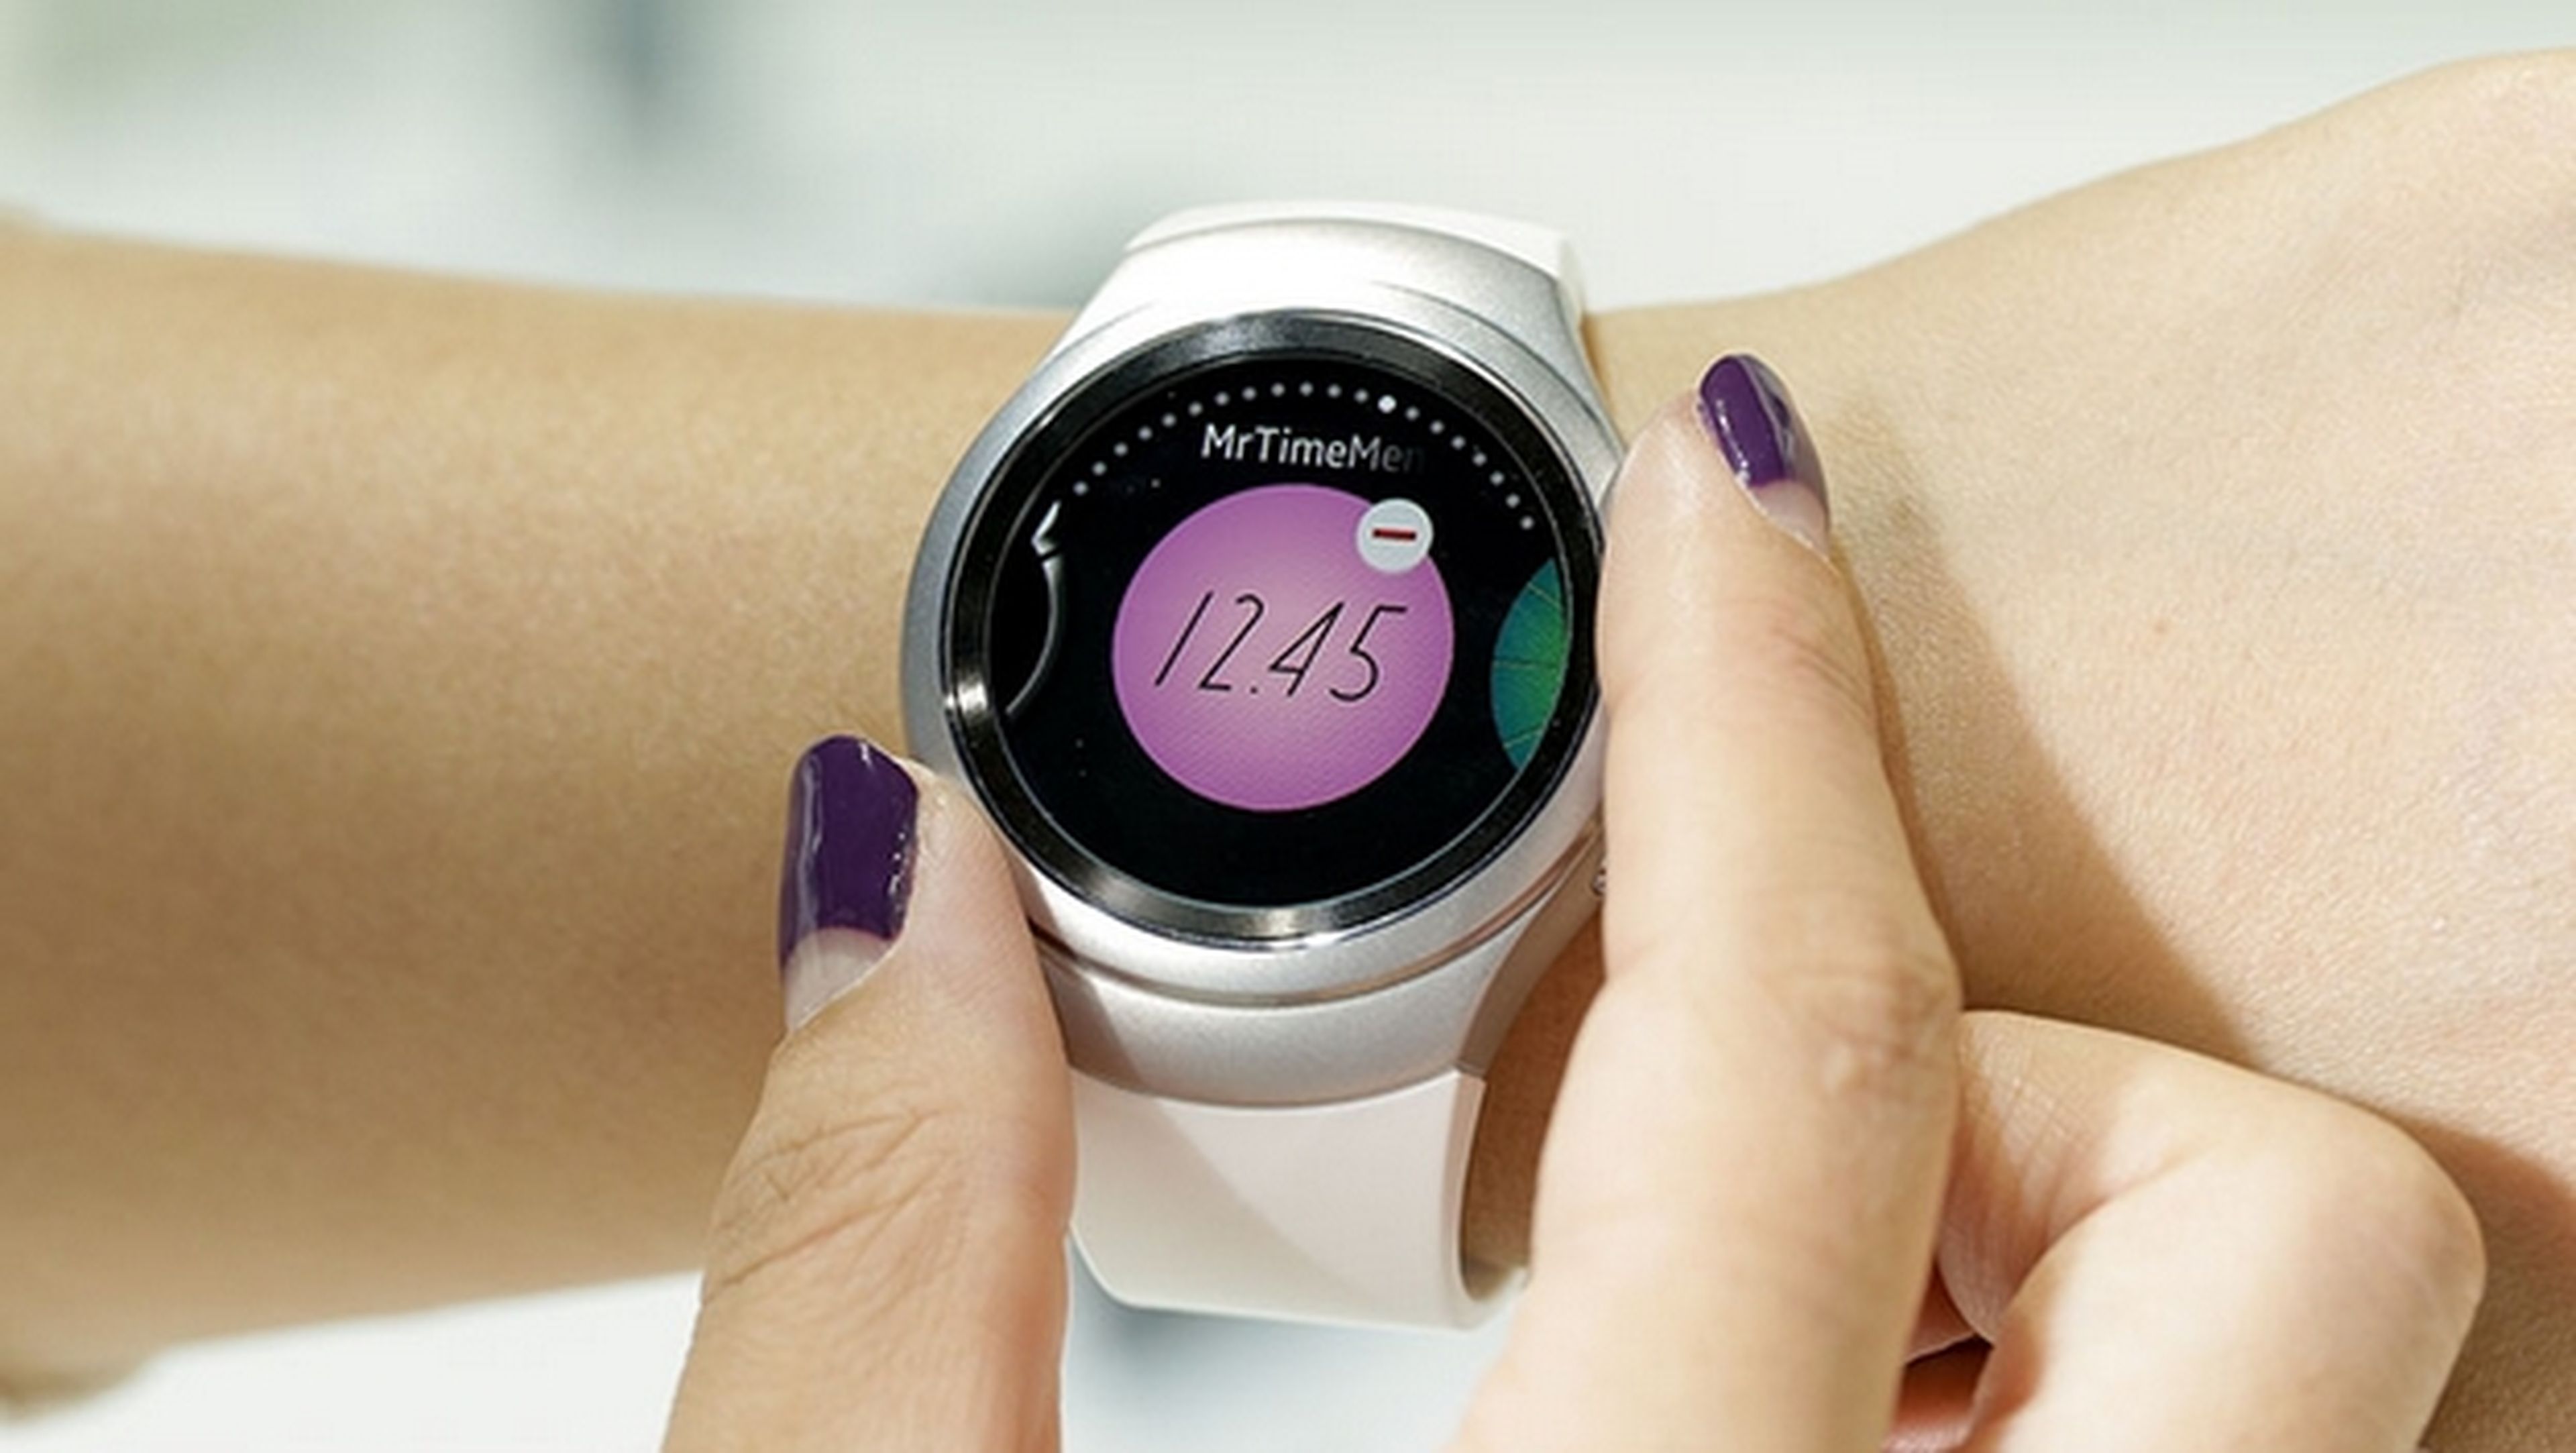 Solitario Por favor Menstruación El smartwatch Samsung Gear S2 se maneja sin tocar la pantalla | Computer Hoy